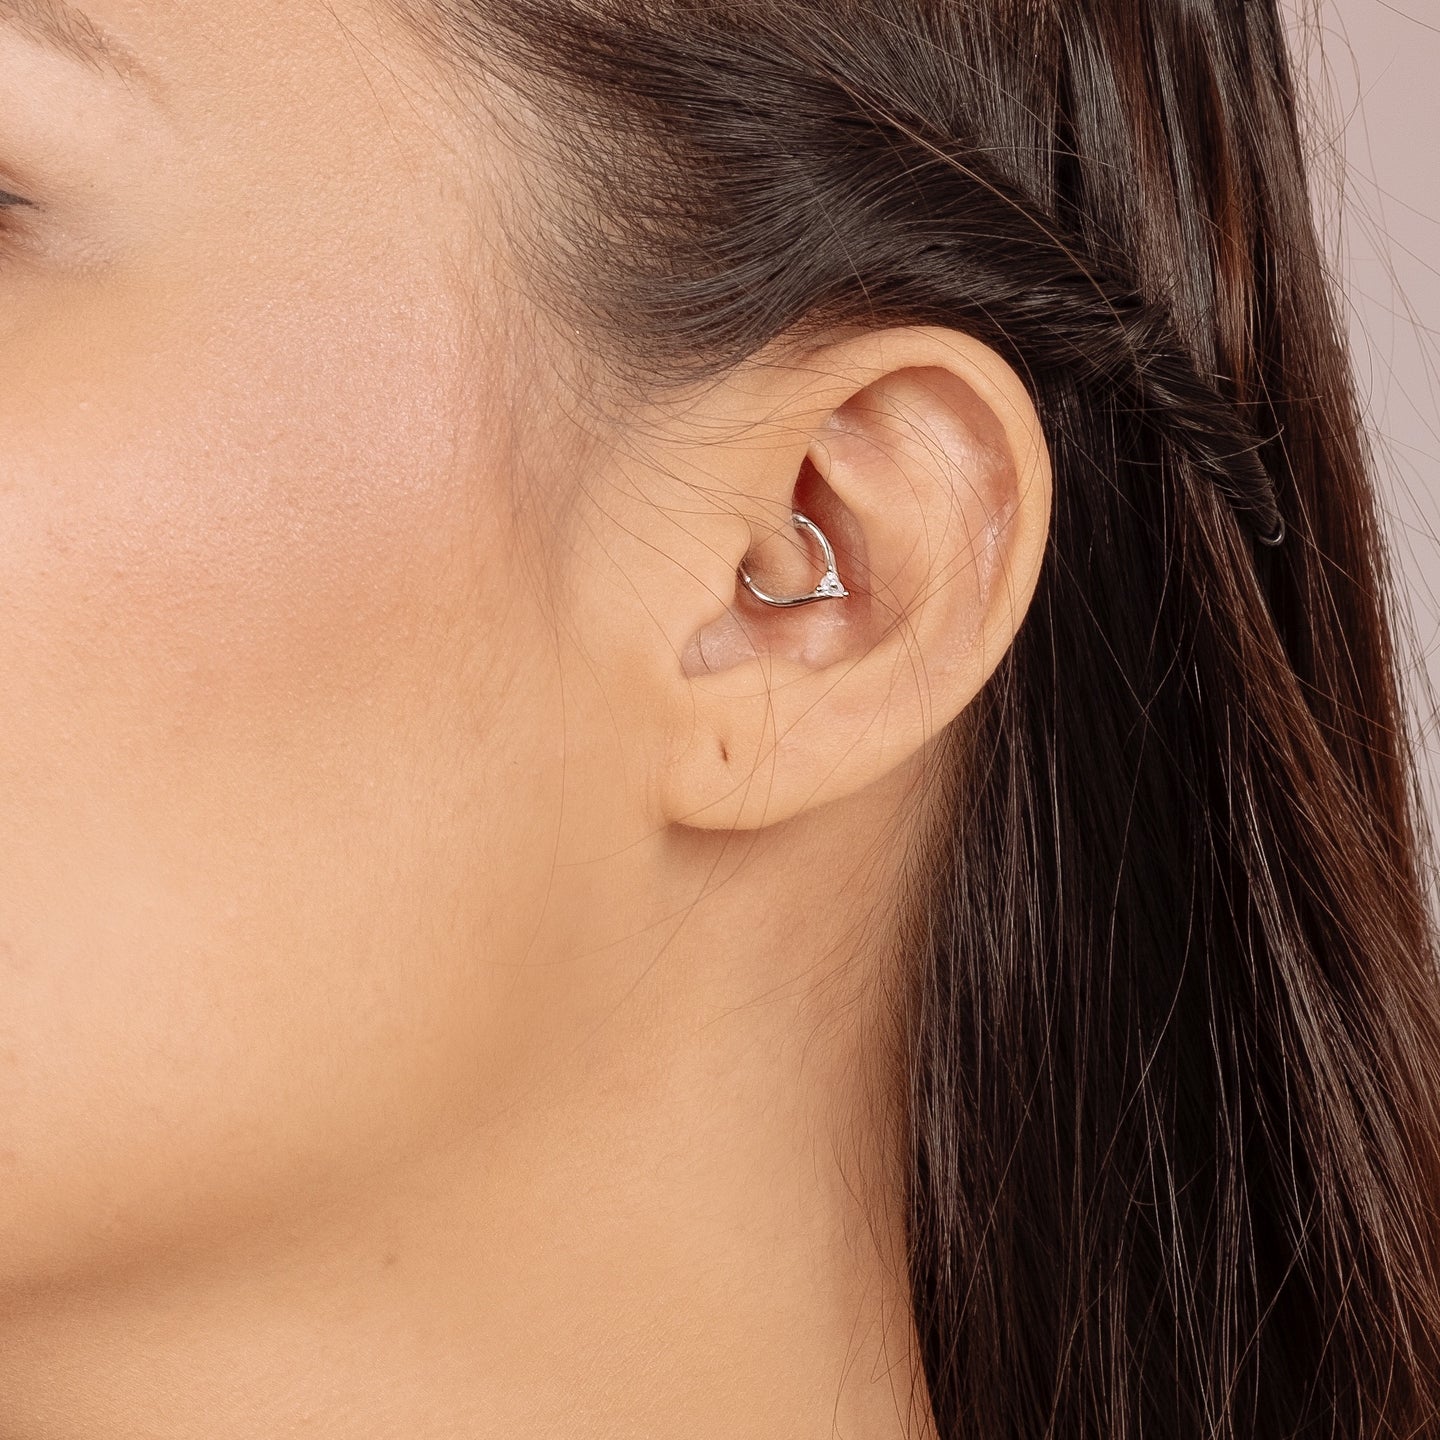 products/uni-cz-piercing-earrings-925-sterling-silver-3.jpg